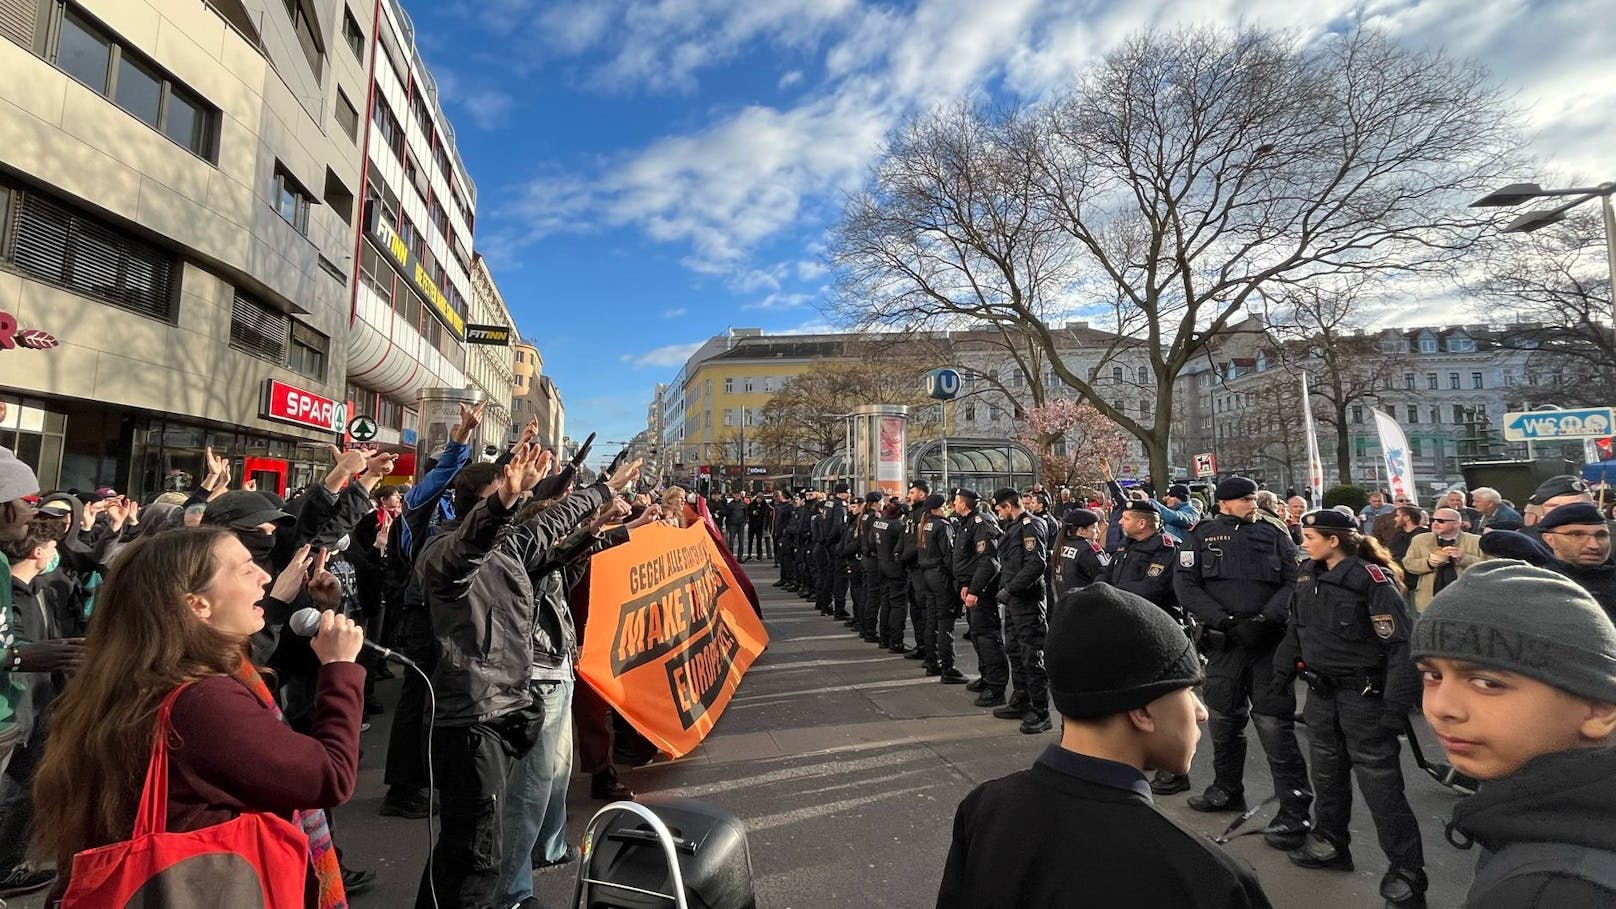 FPÖ-Demo in Wien – Angriff auf TV-Team, Störaktion